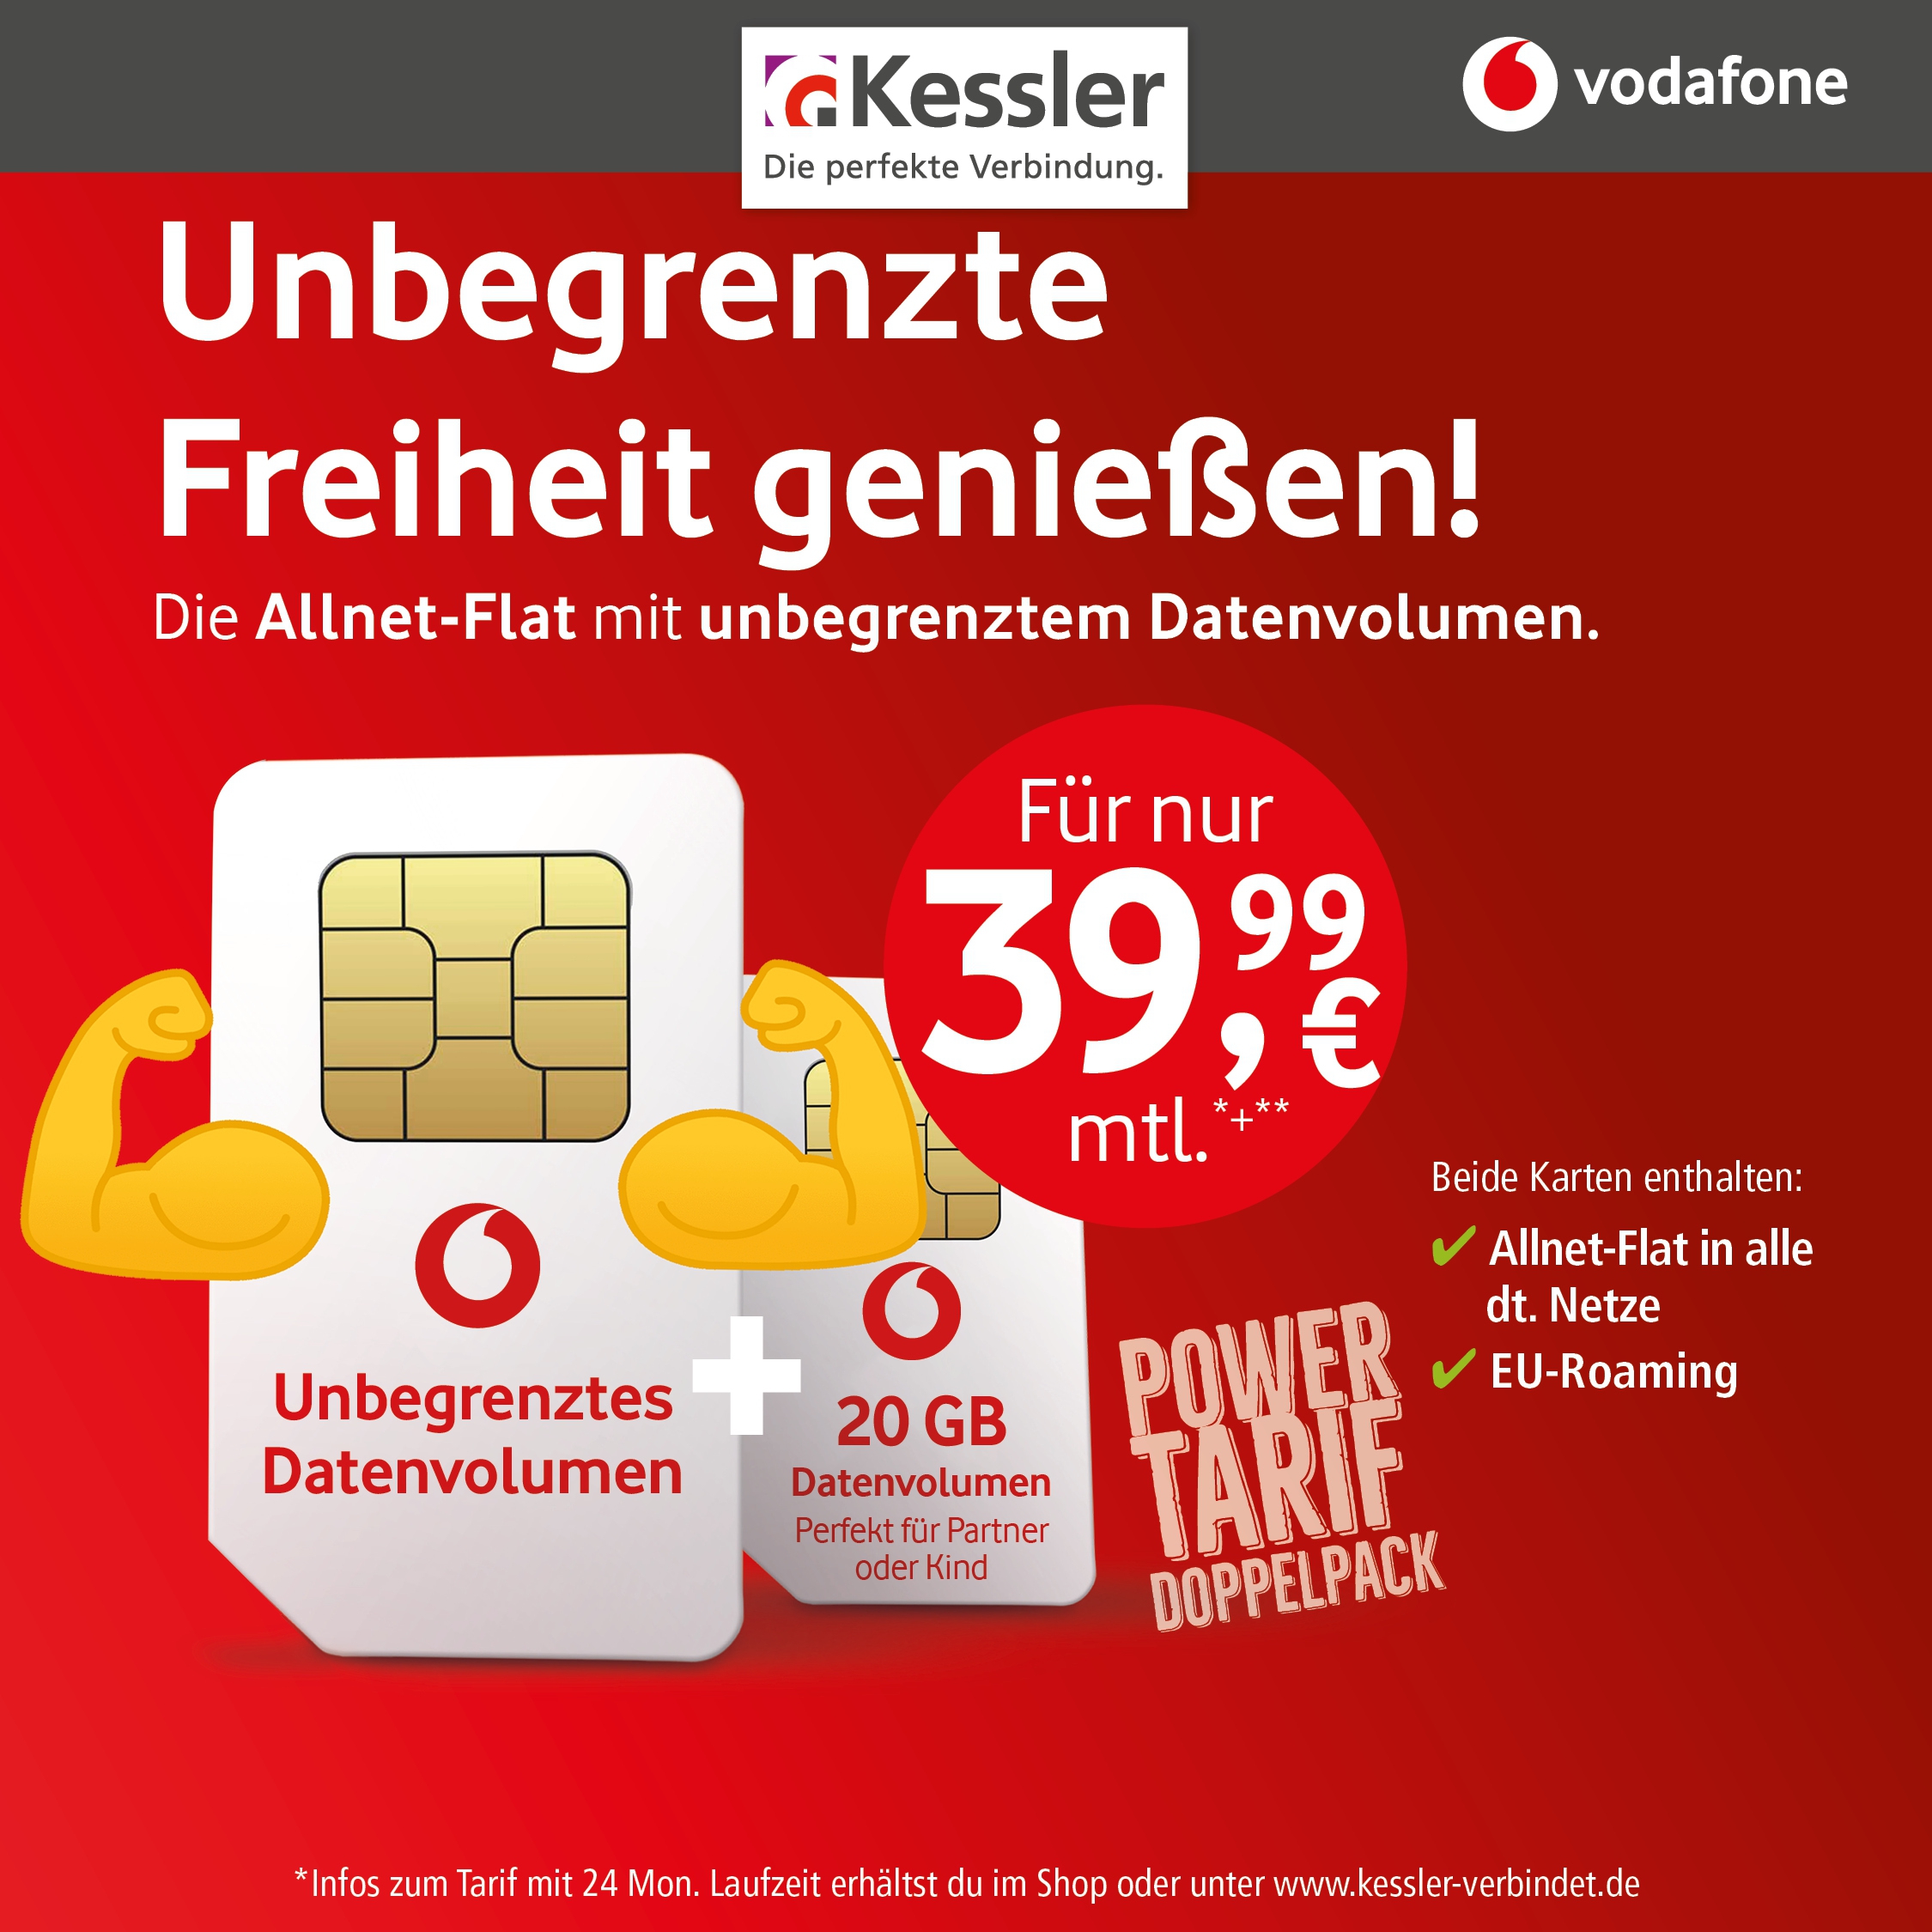 Vodafone Smart Entry + Family Card für nur 39,99€